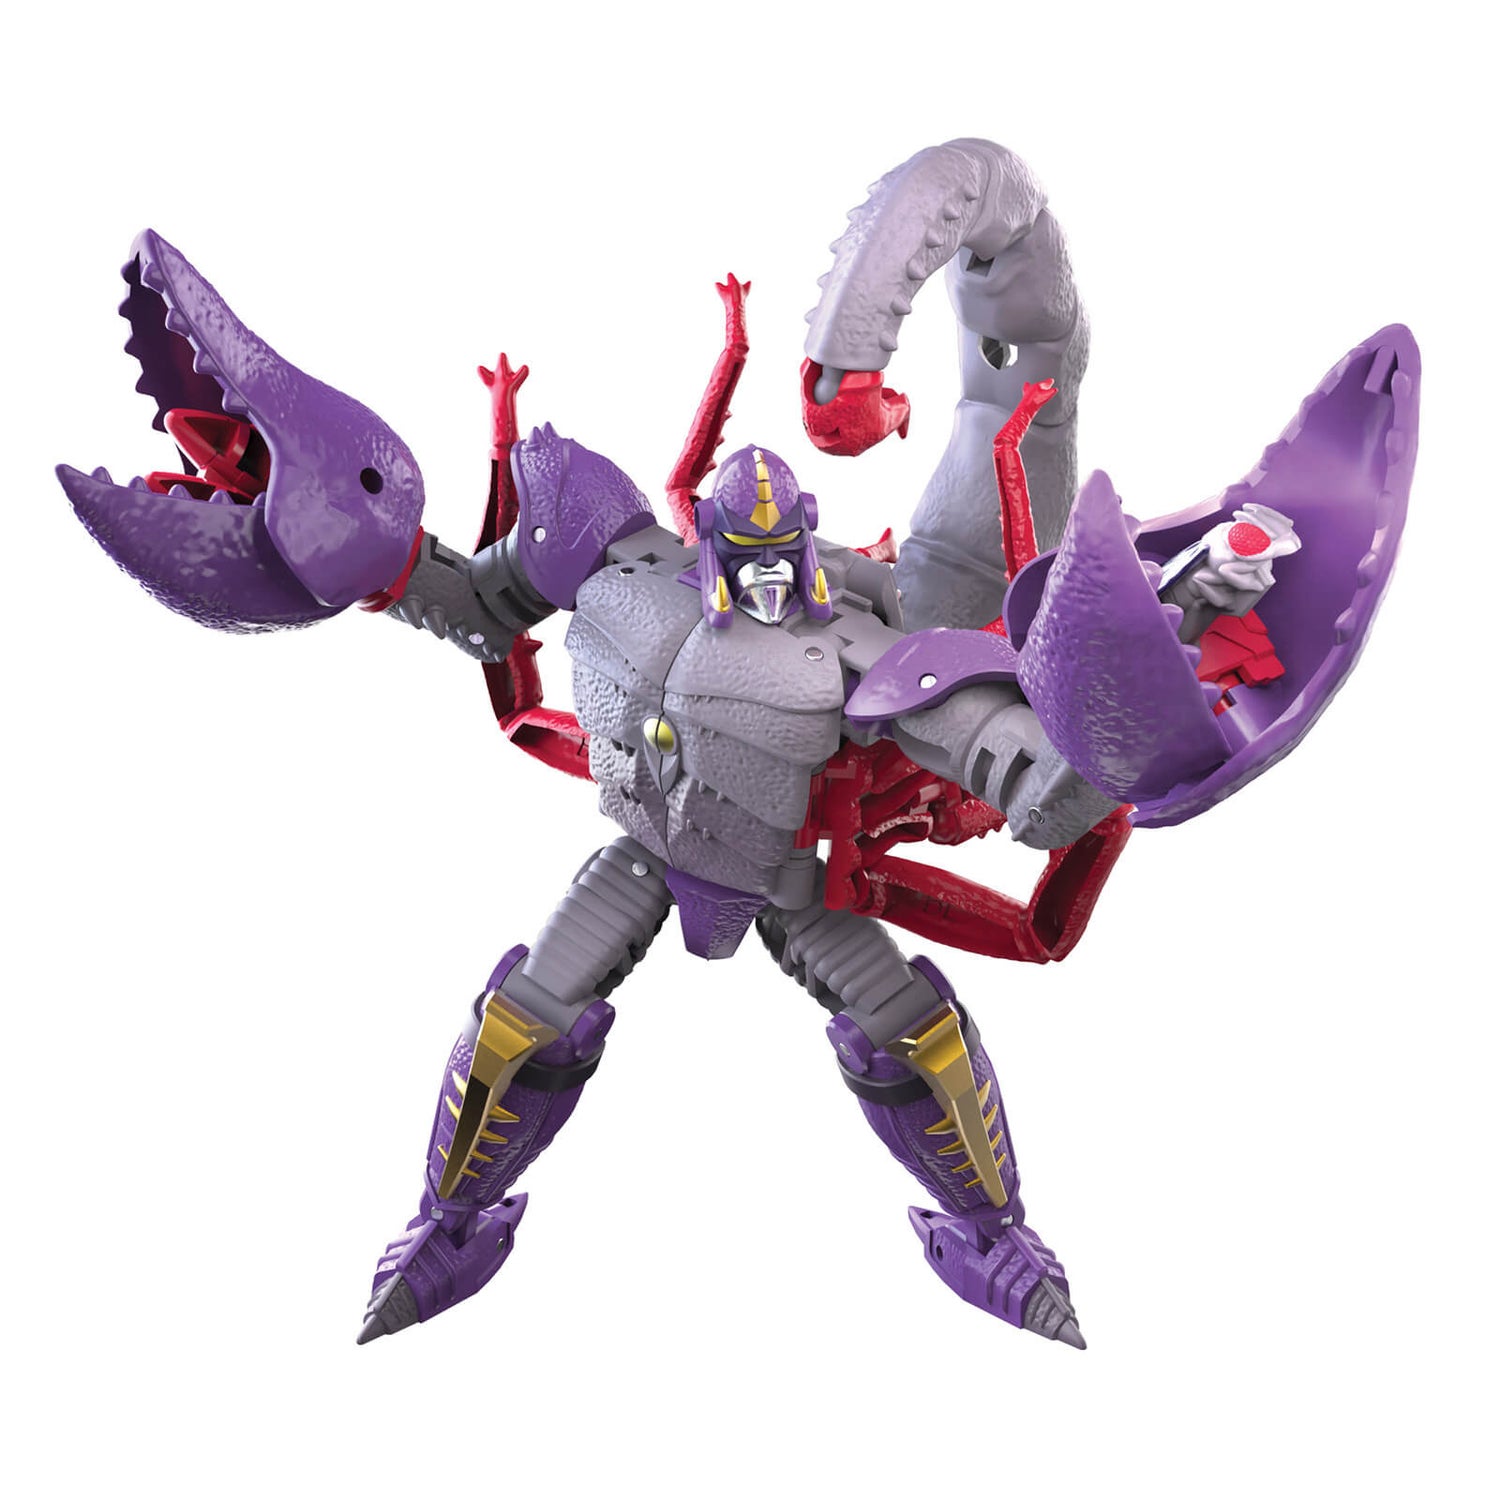 Hasbro Transformers Generations War for Cybertron: Kingdom Deluxe WFC-K23 Predacon Scorponok Actiefiguur